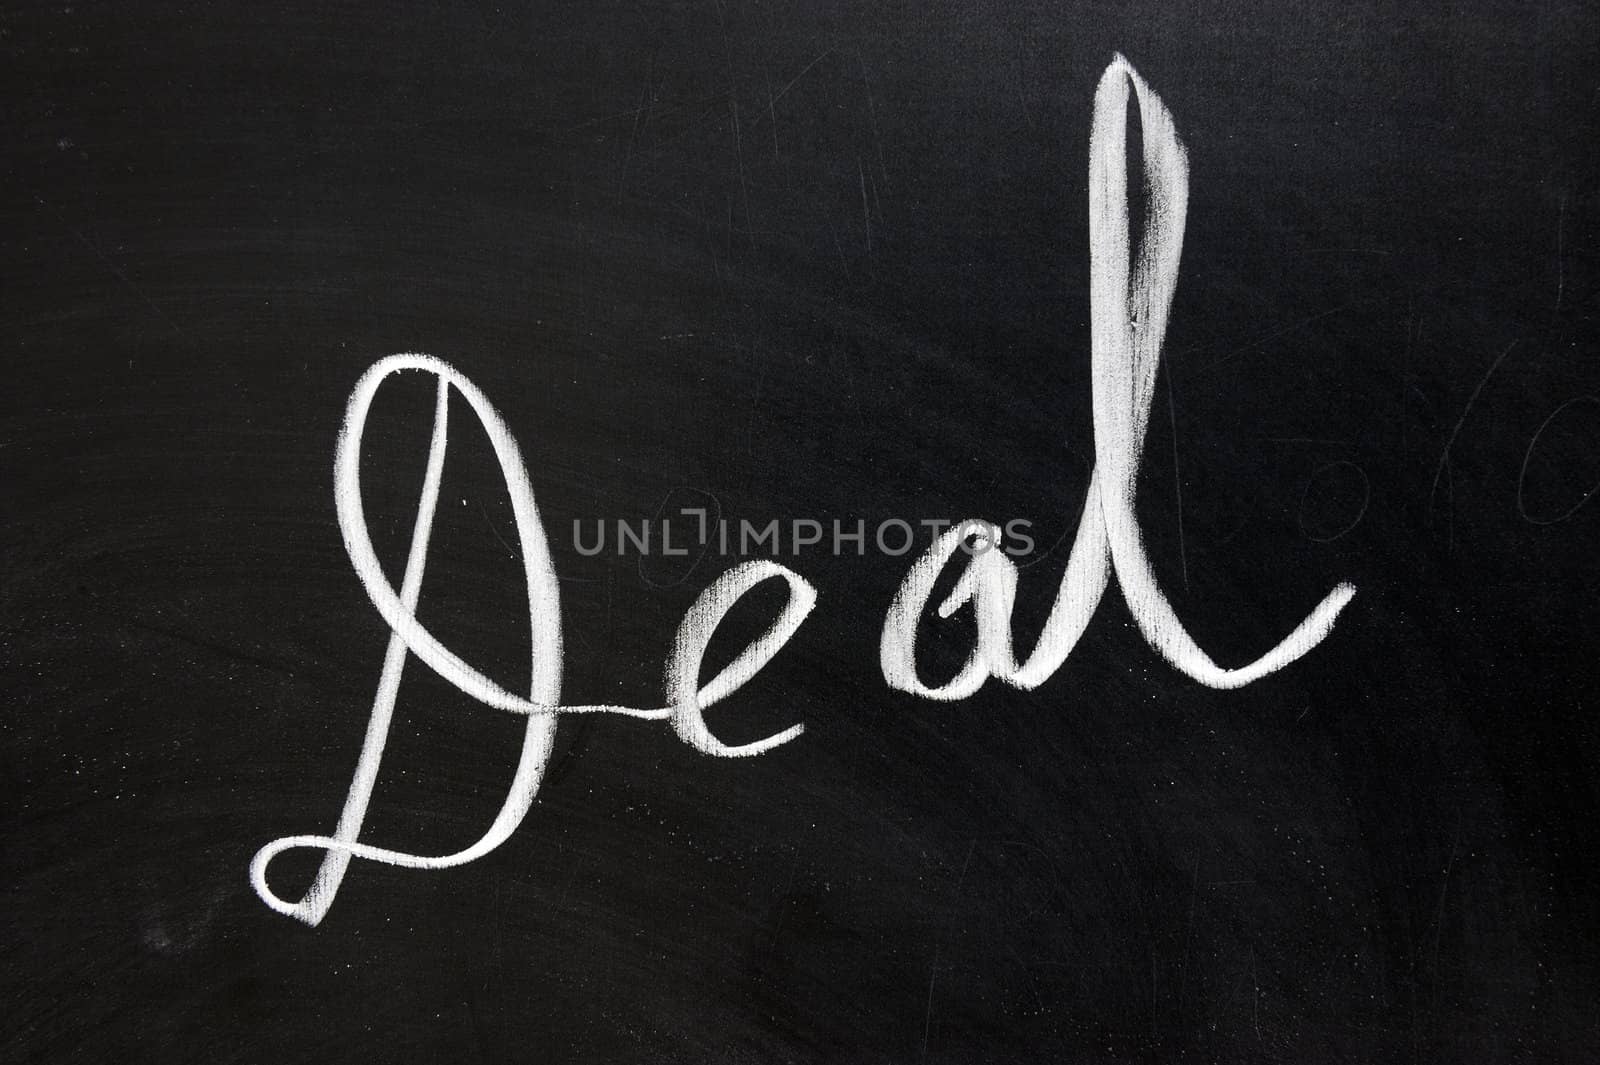 Chalk drawing - "Deal" word written on the chalkboard